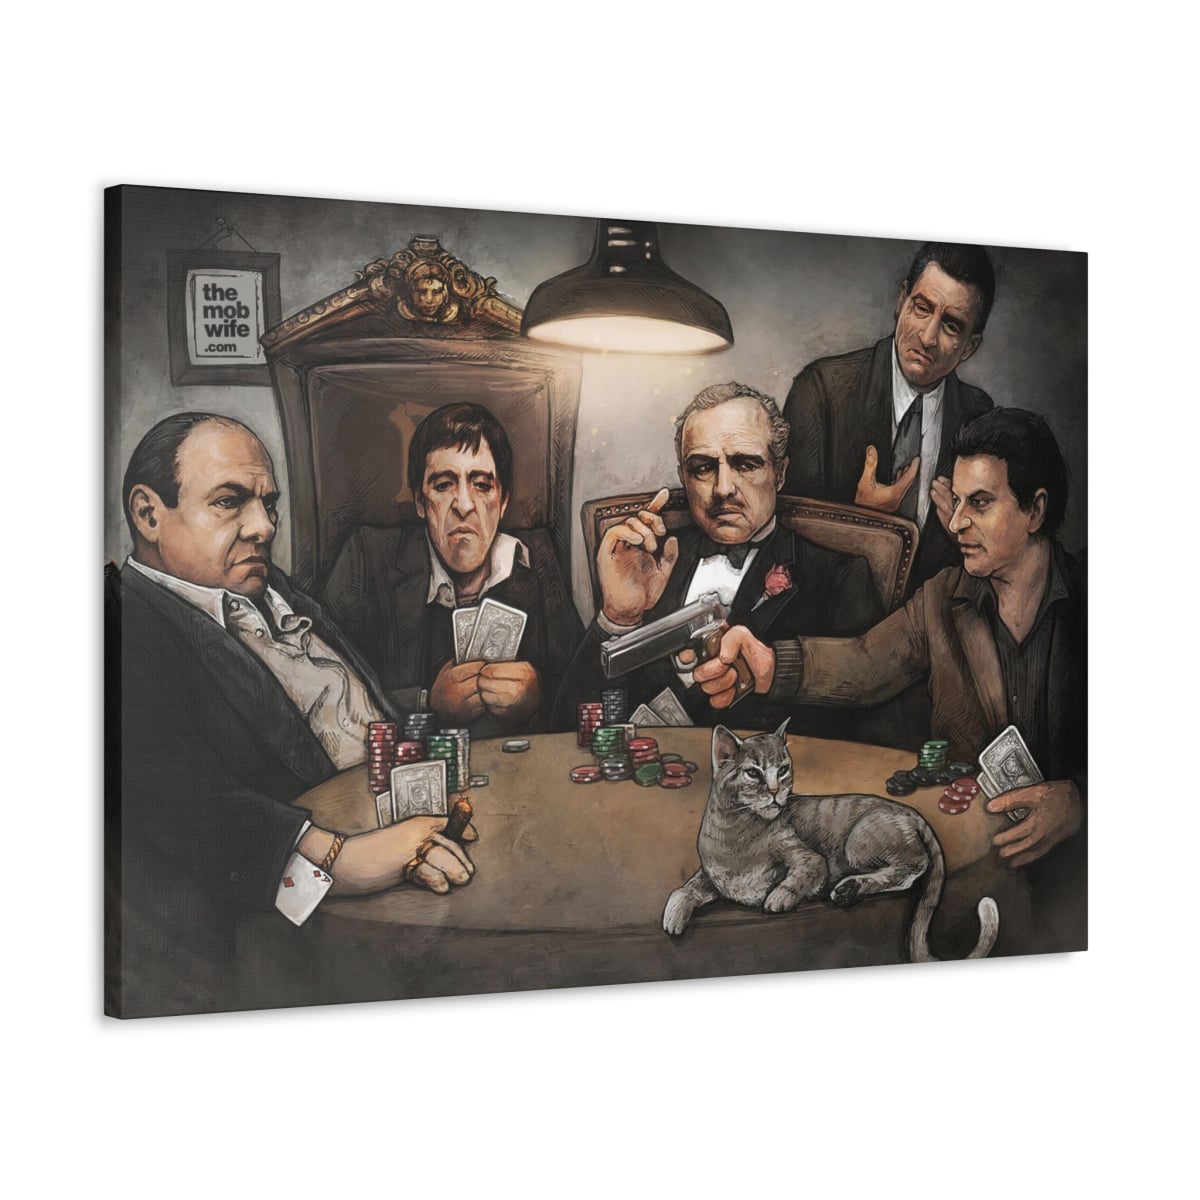 Themed Mobster Artwork for Casino Decor